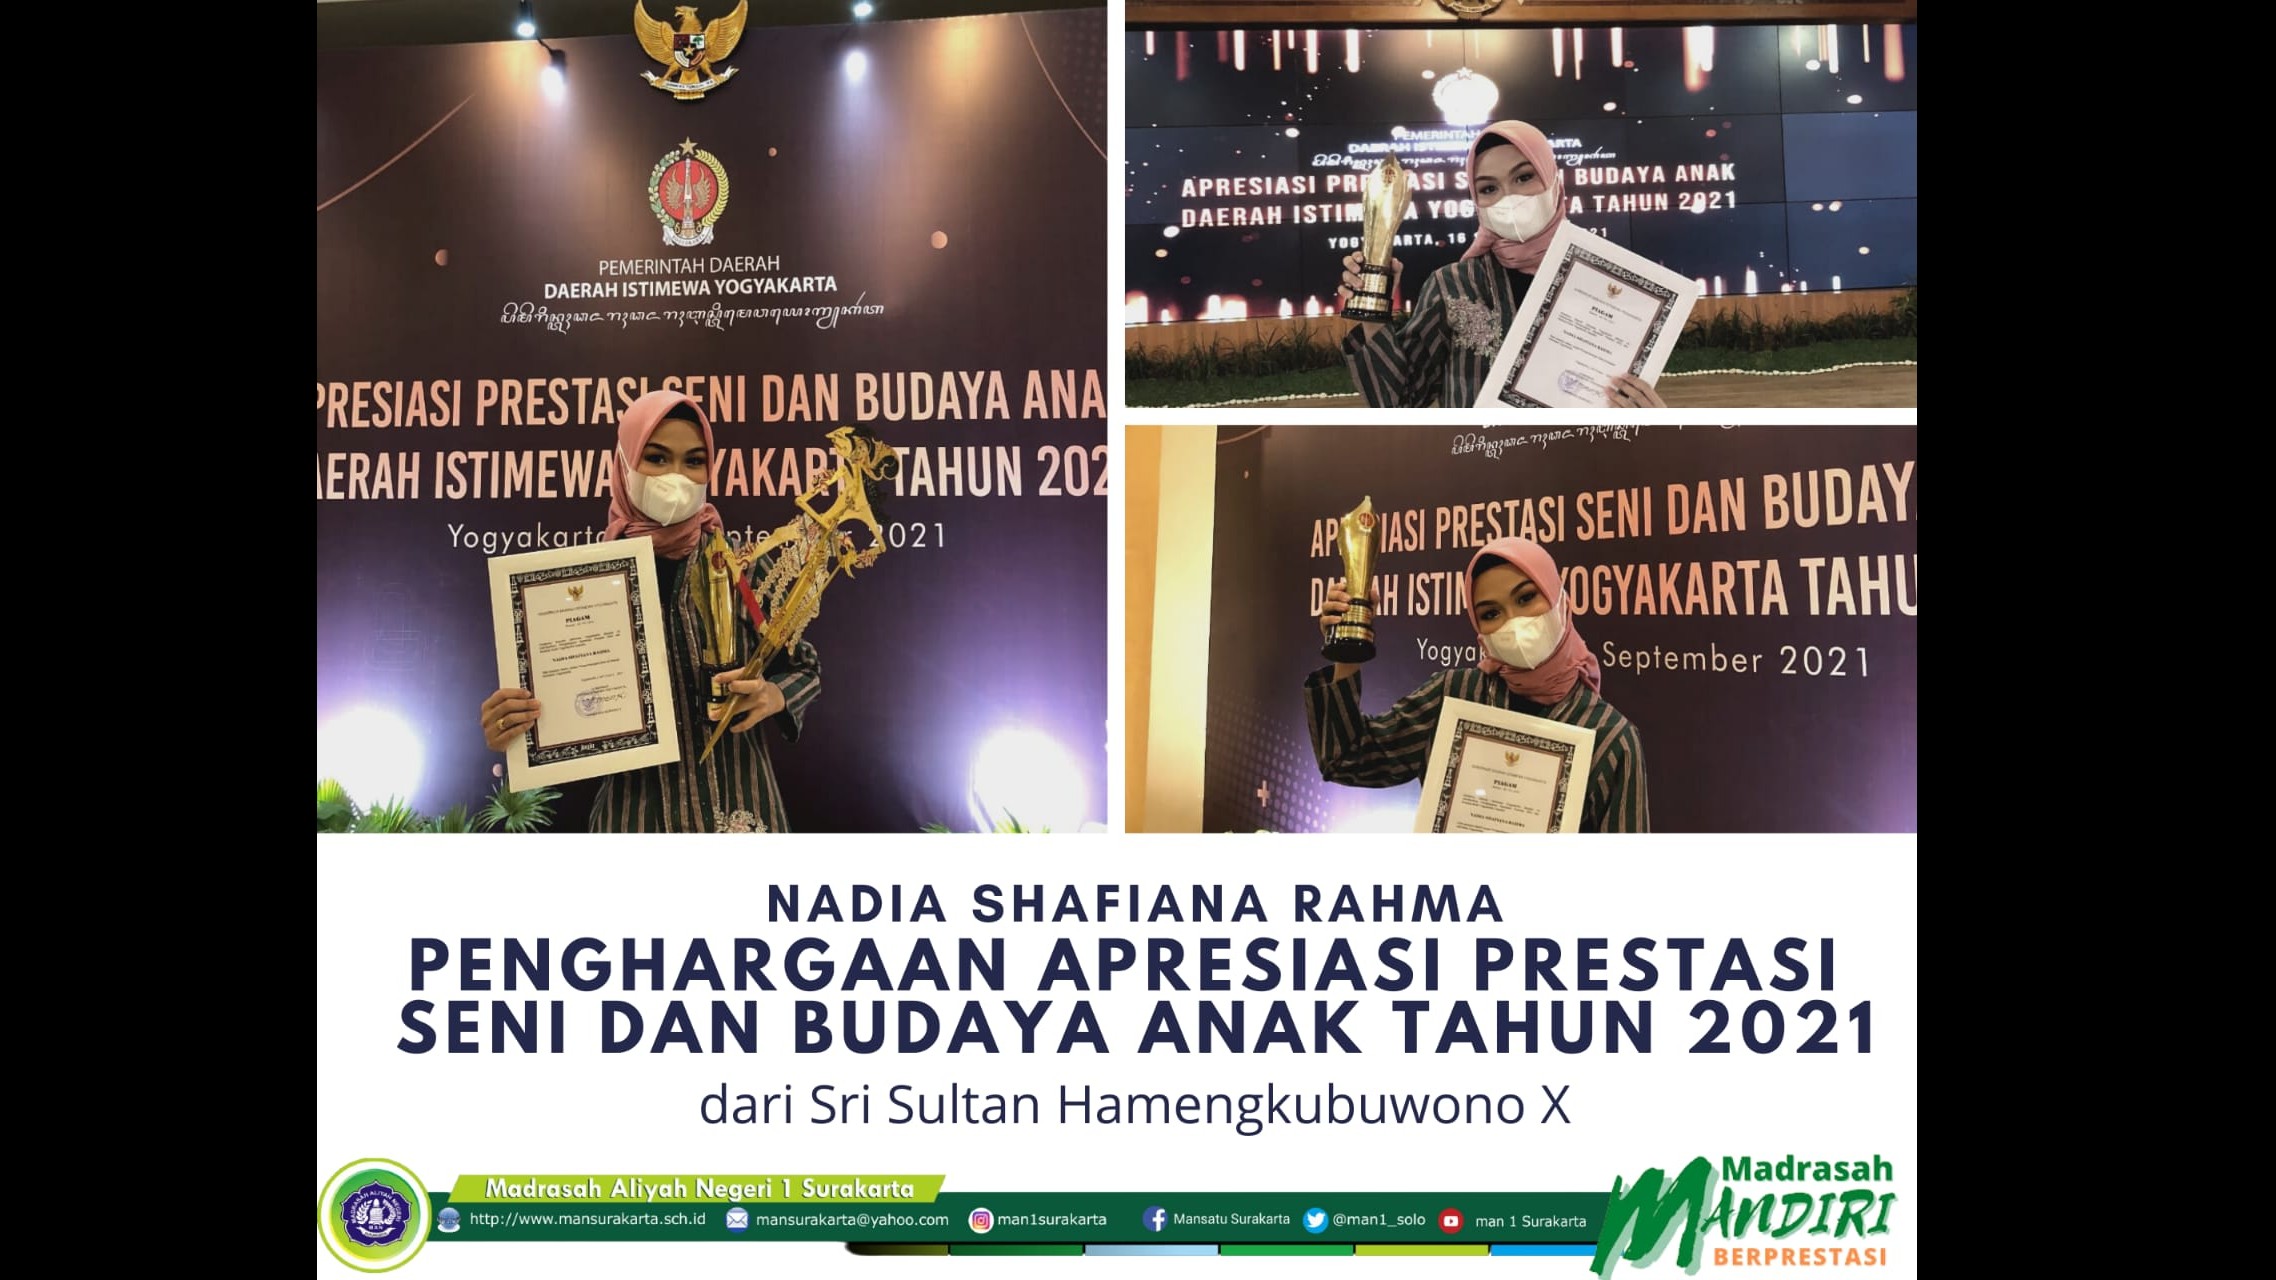 Nadia Shafiana Rahma, siswi MAN 1 Surakarta terima Apresiasi Prestasi Seni dan Budaya Anak Tahun 2021 dari Gubernur DIY